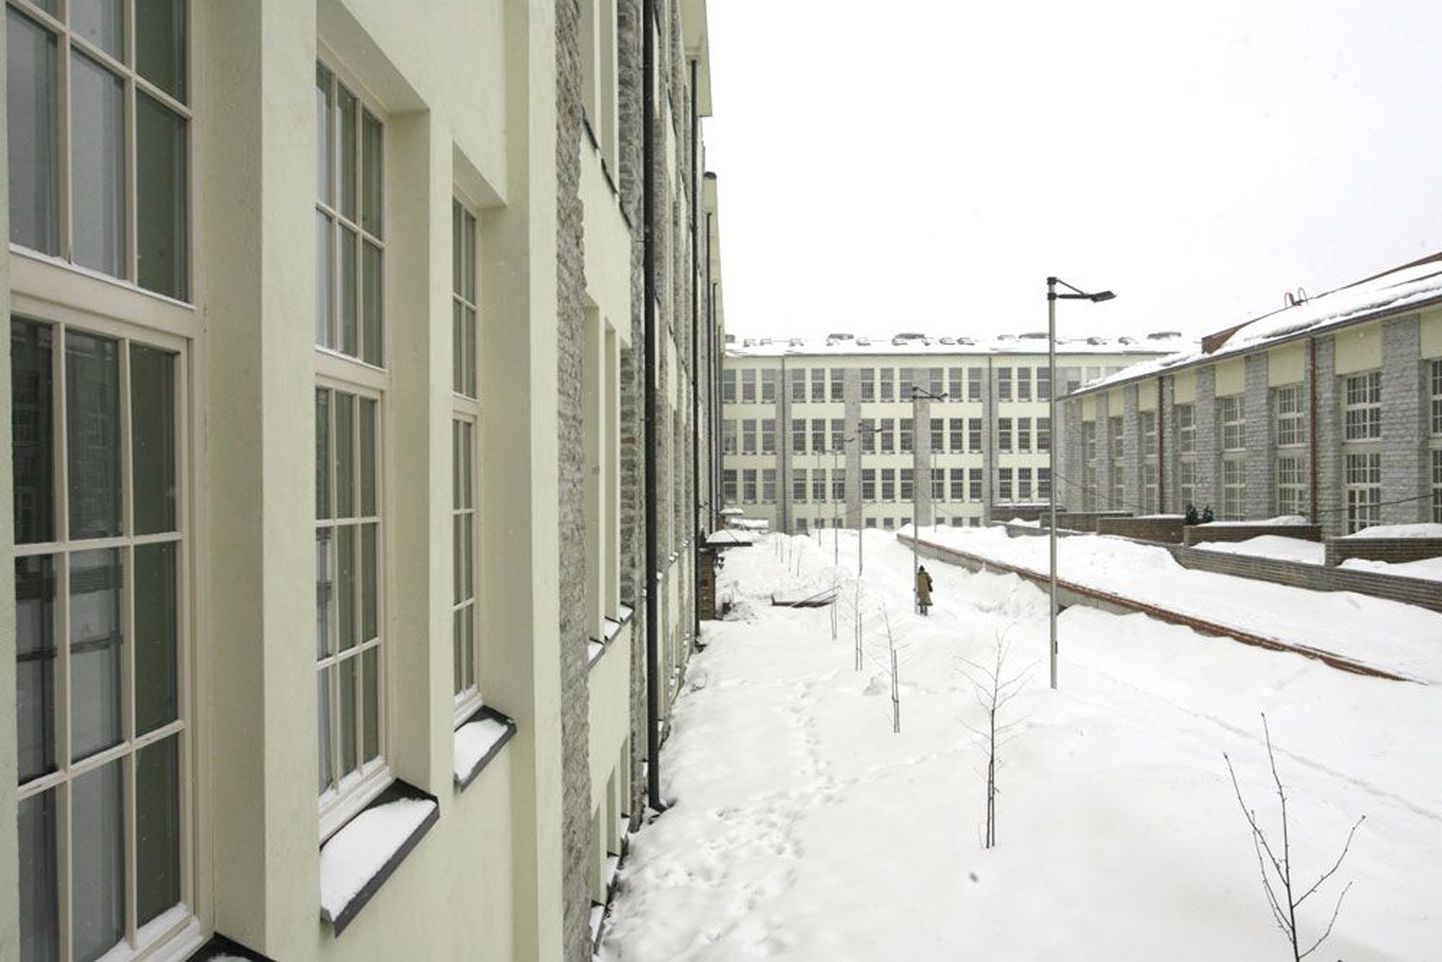 Mainekas Lutheri kvartalis Tallinnas on pärast vahepealset vaikust valmimas uued korterid.